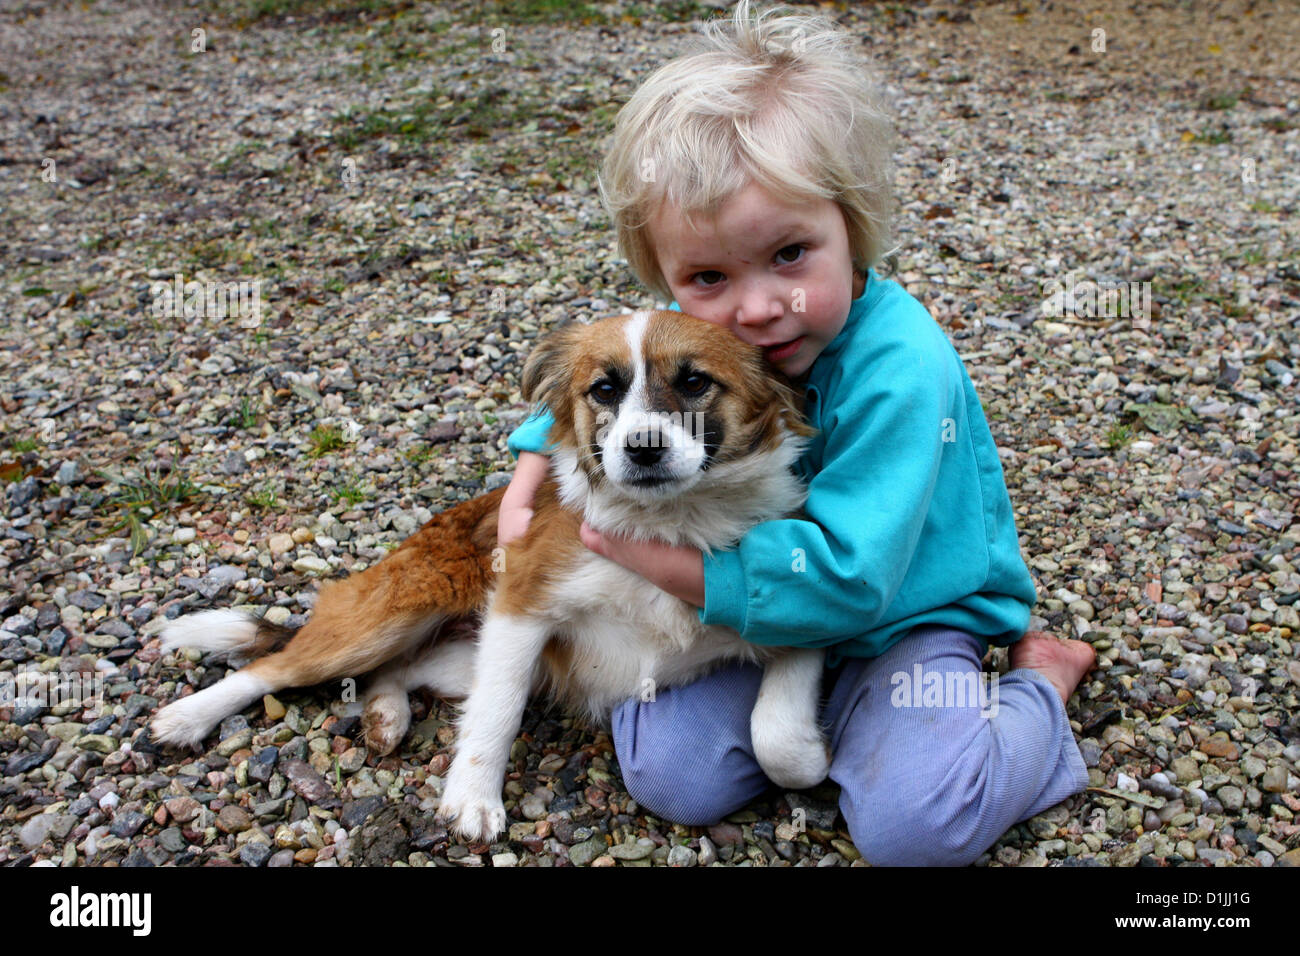 Amico di bambini e cani cane cane che guarda la macchina fotografica, il cane bambino abbraccia Un bambino abbraccia amorevolmente il suo cane bambino da solo Foto Stock